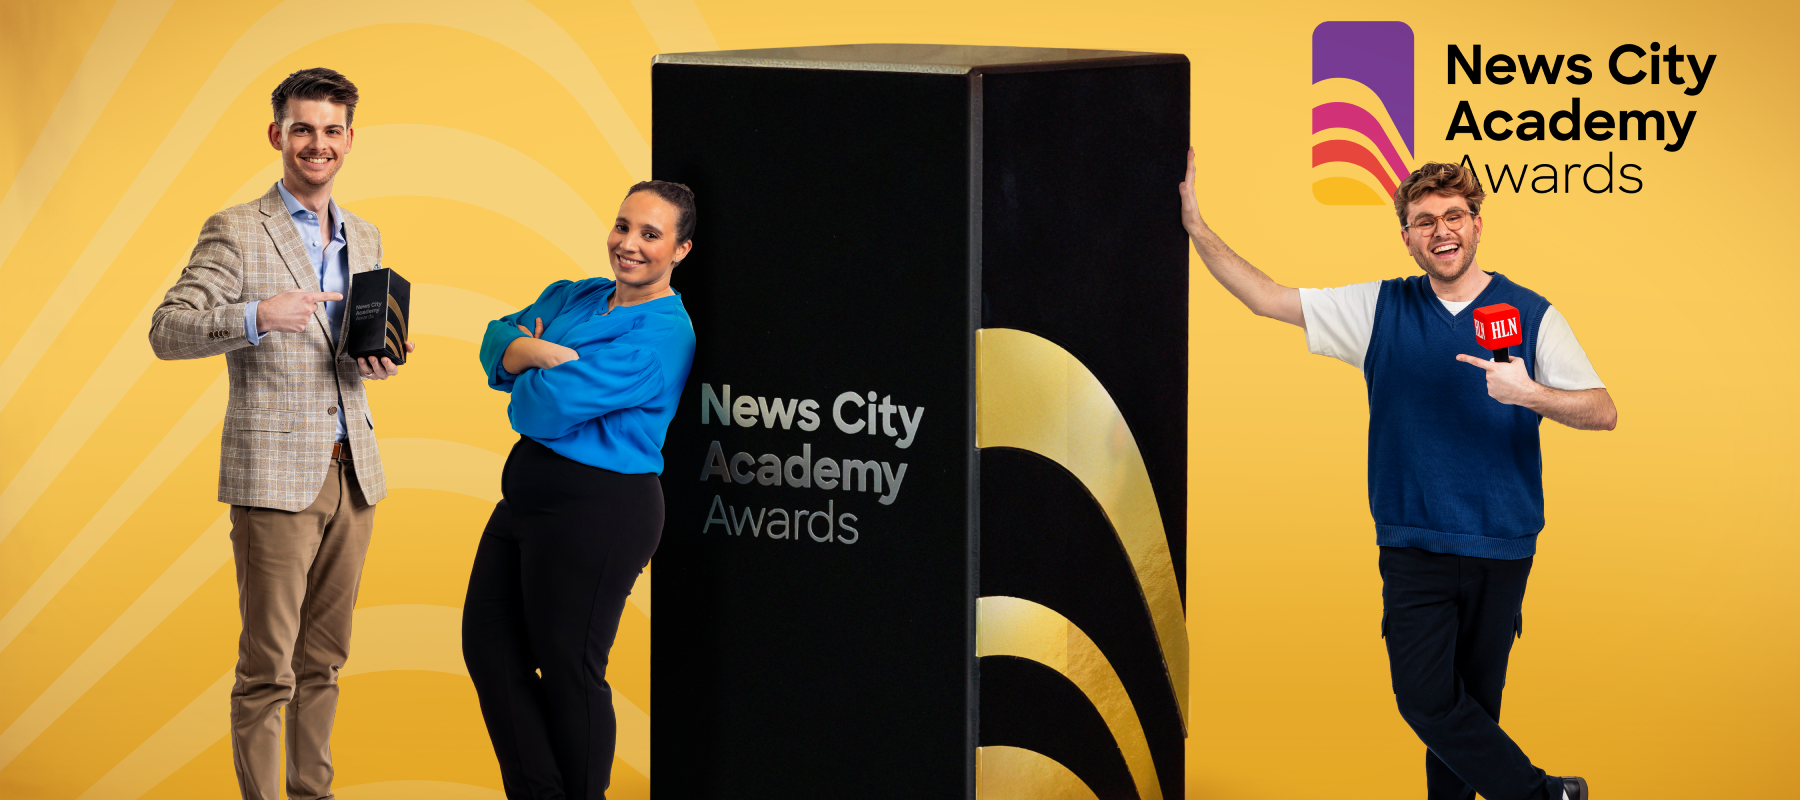 DPG Media organiseert derde editie News City Academy Awards